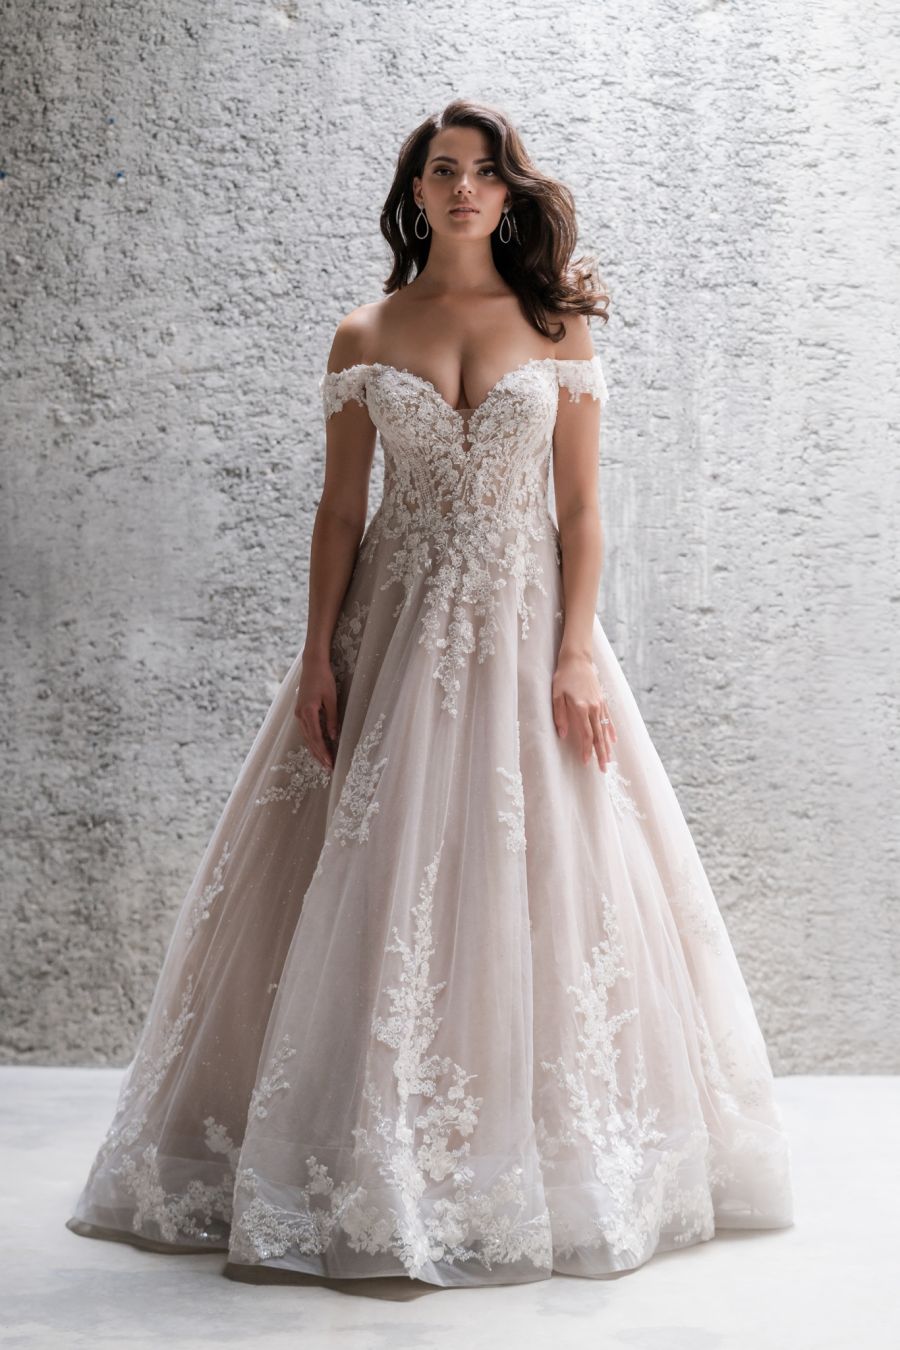 Off The Shoulder Wedding Dresses: 35 Bridal Looks | Dreamy wedding dress,  Dream wedding dresses, Wedding dresses